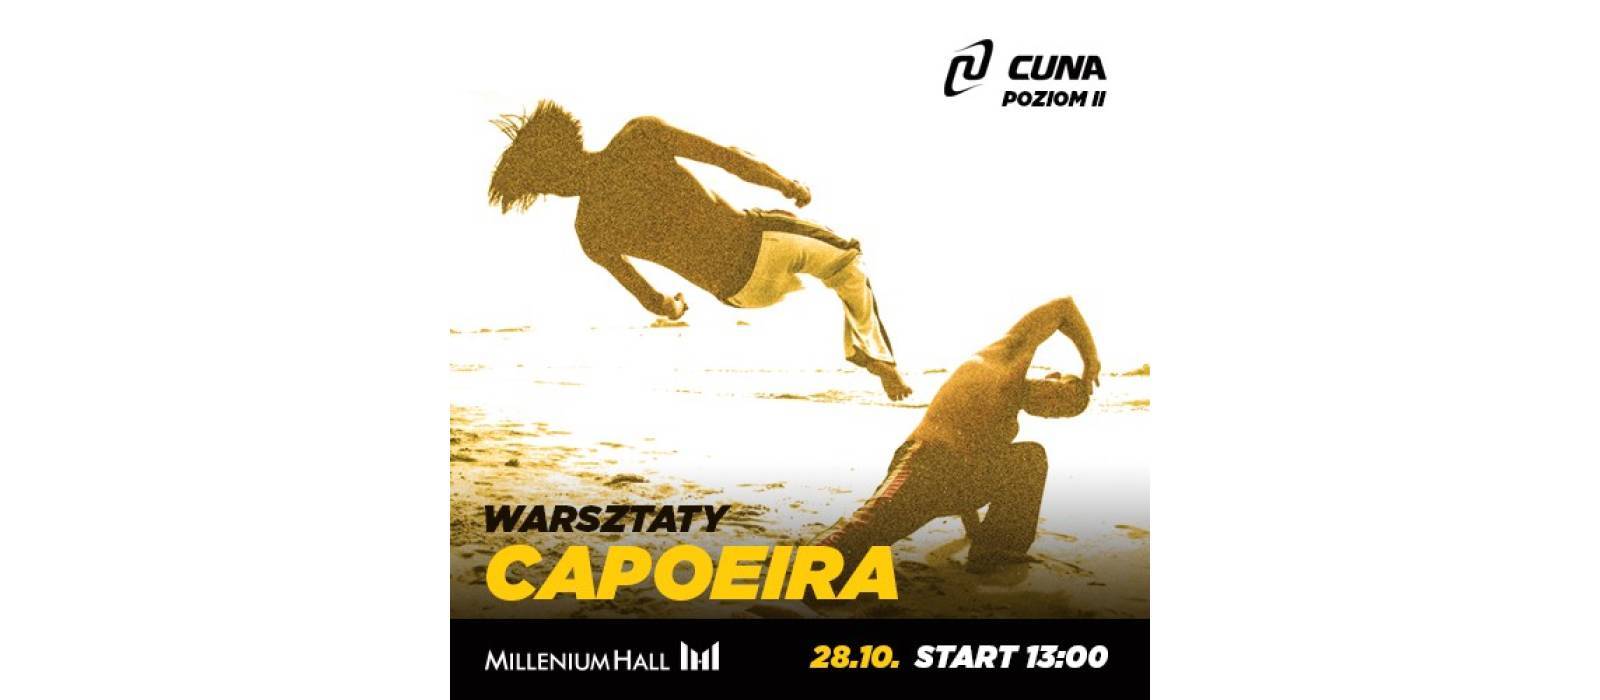 Warsztaty Capoeira w Cuna - 1